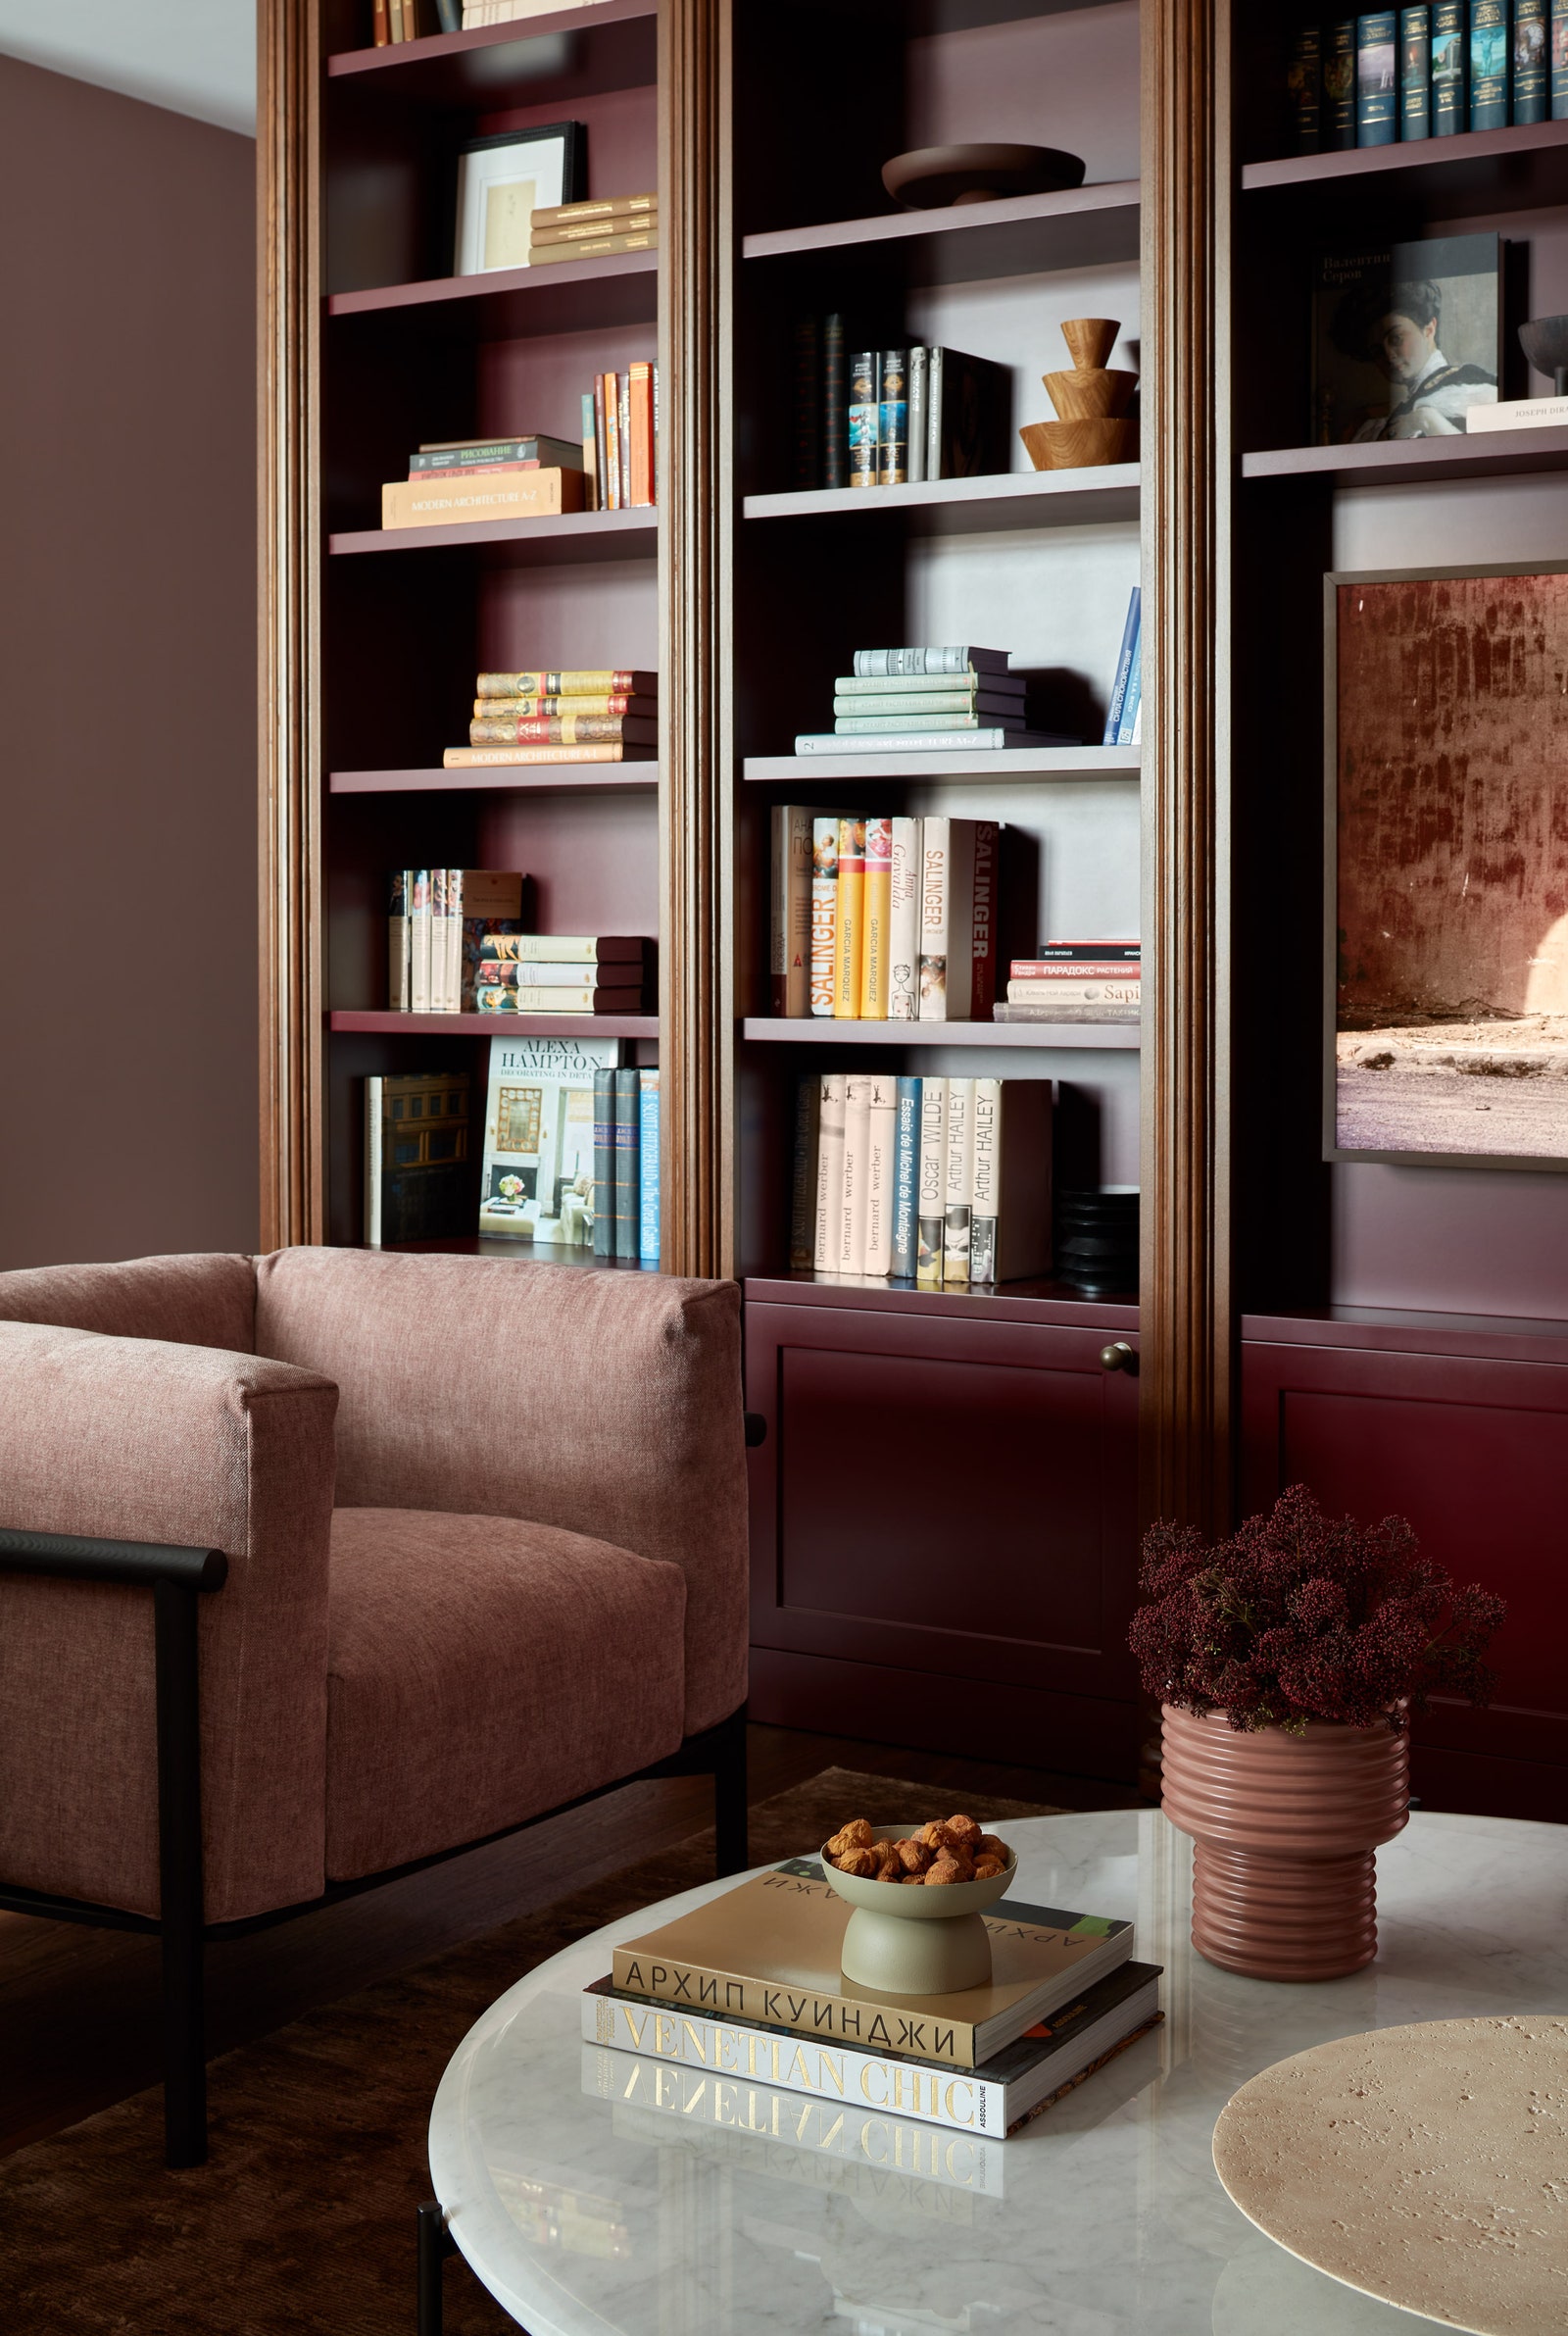 Фрагмент гостиной. Кресла Lema журнальный стол Meridiani стеллаж выполнен по эскизам дизайнеров мебельной фабрикой Ariyana.